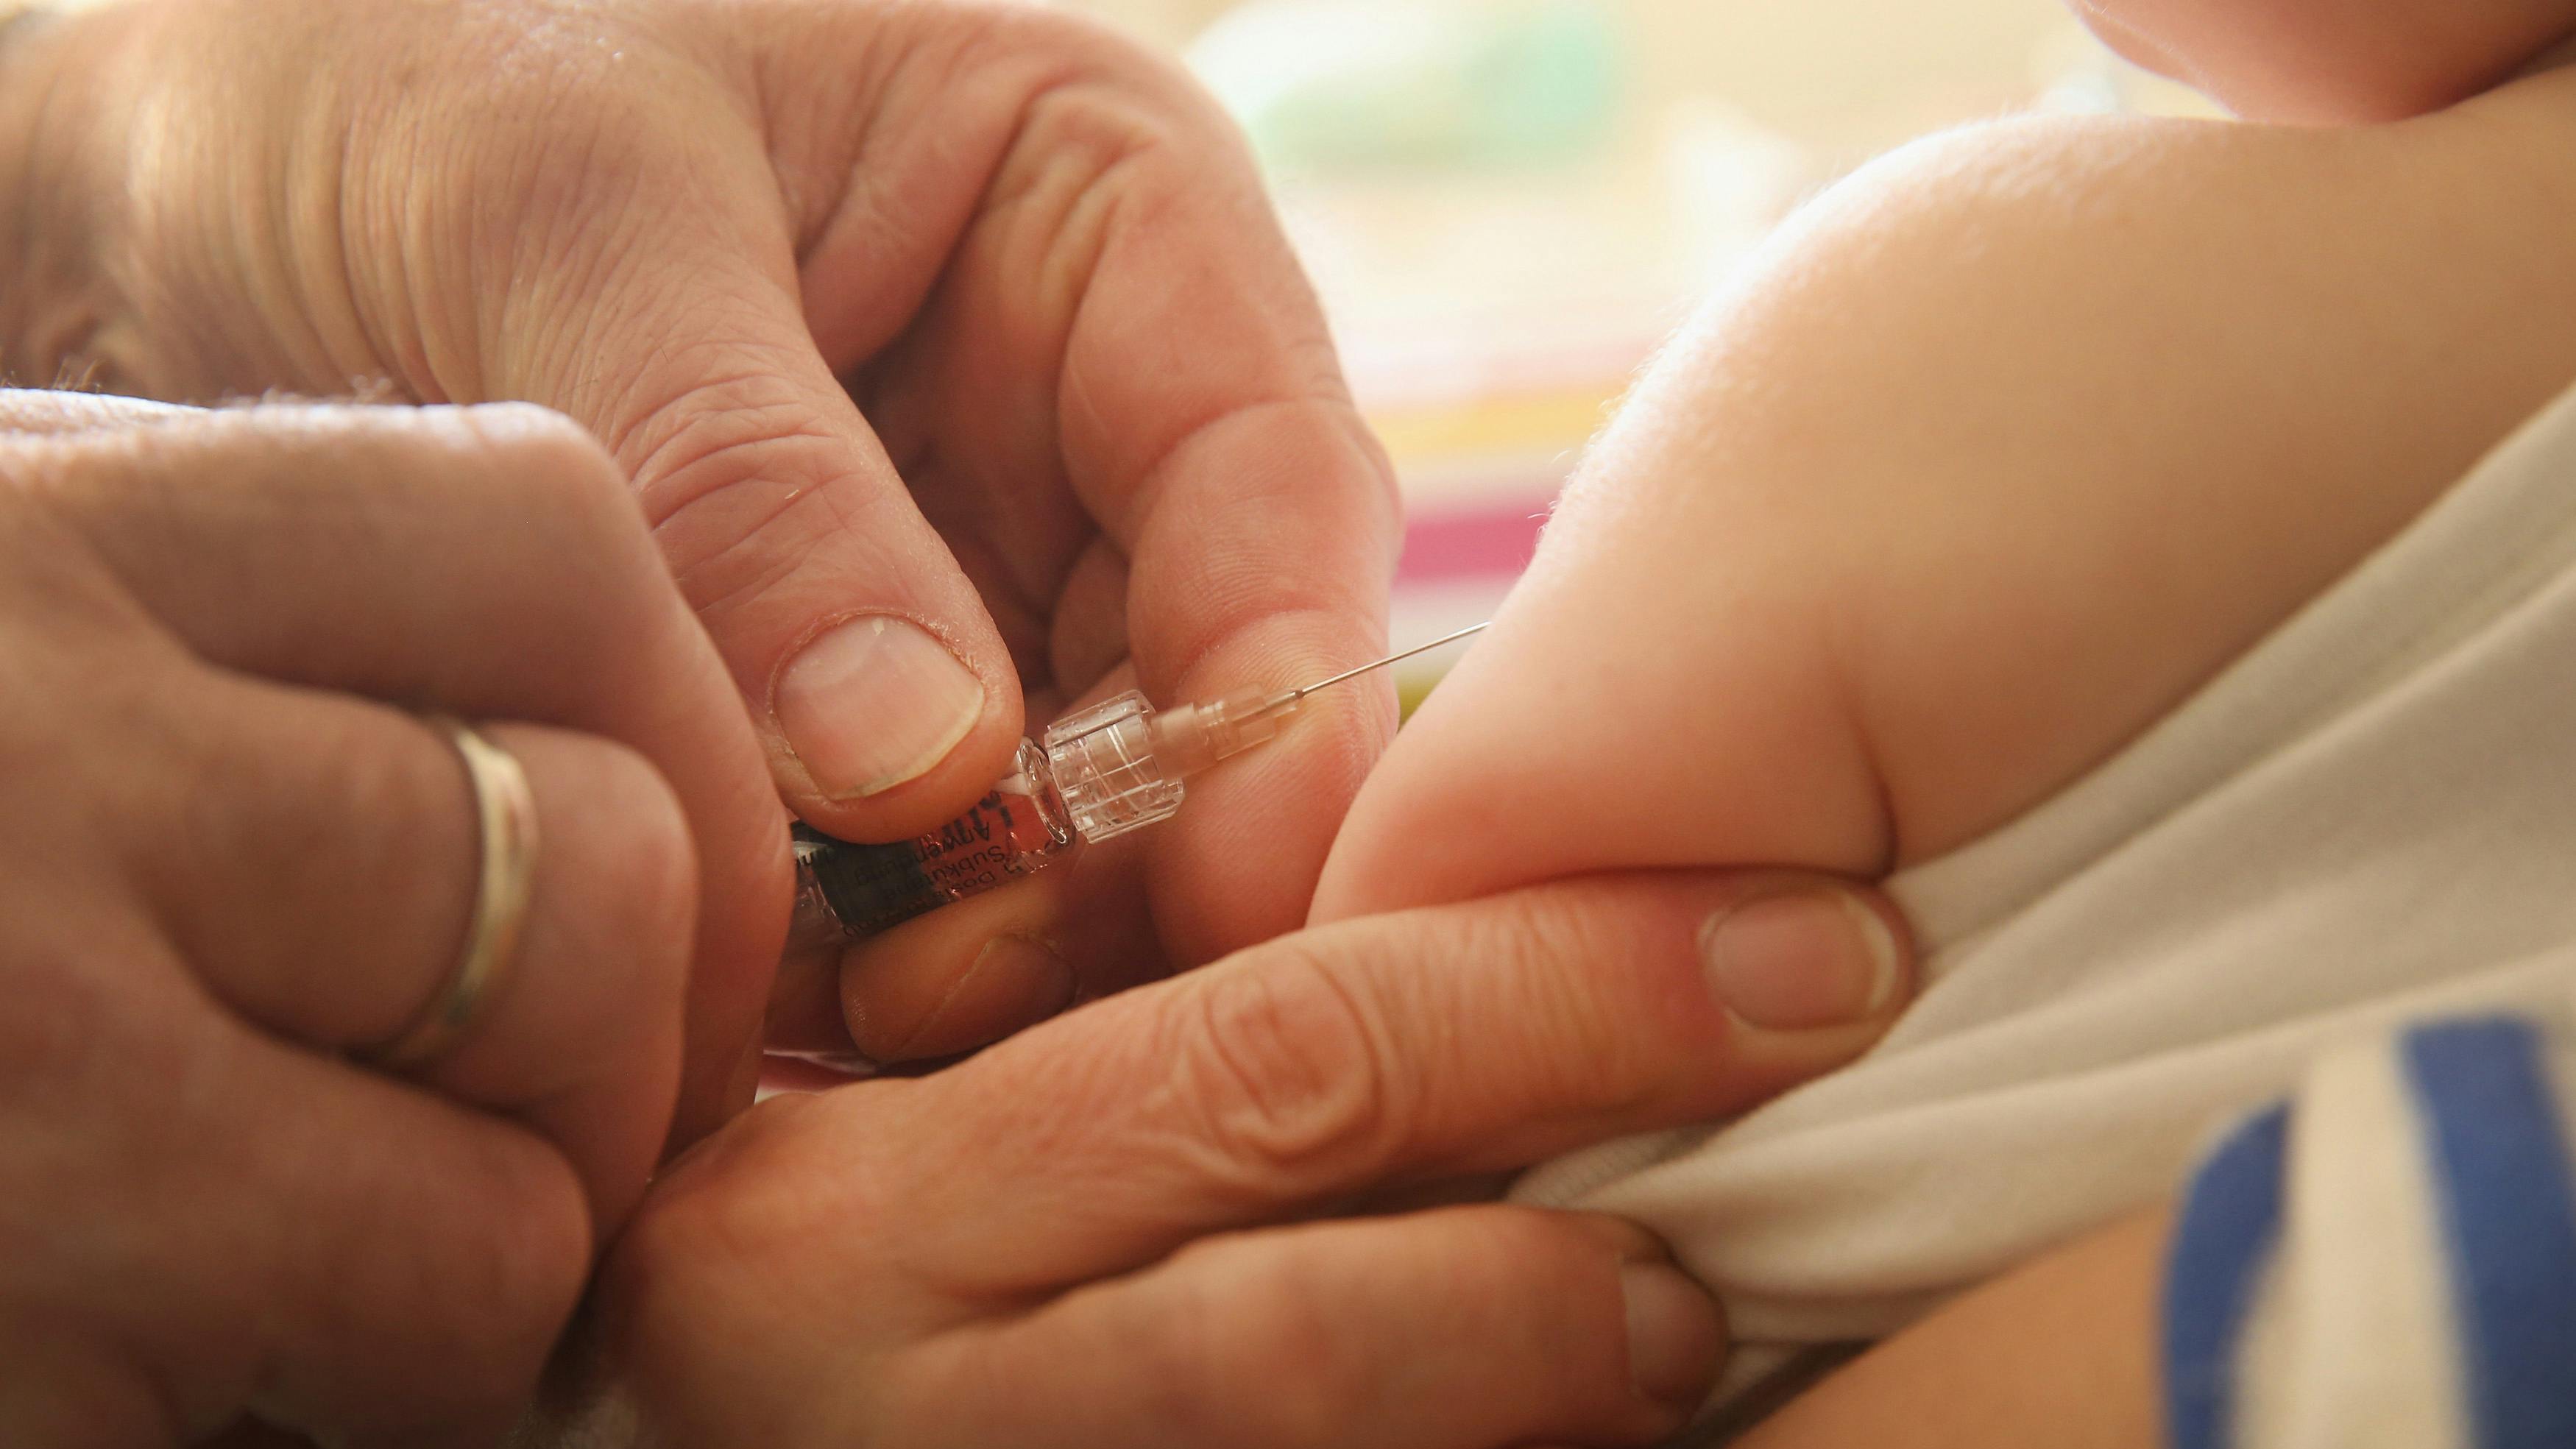 Nahaufnahme einer Hand, mit einer Spritze gut sichtbar, die ein Kleinkind impft.